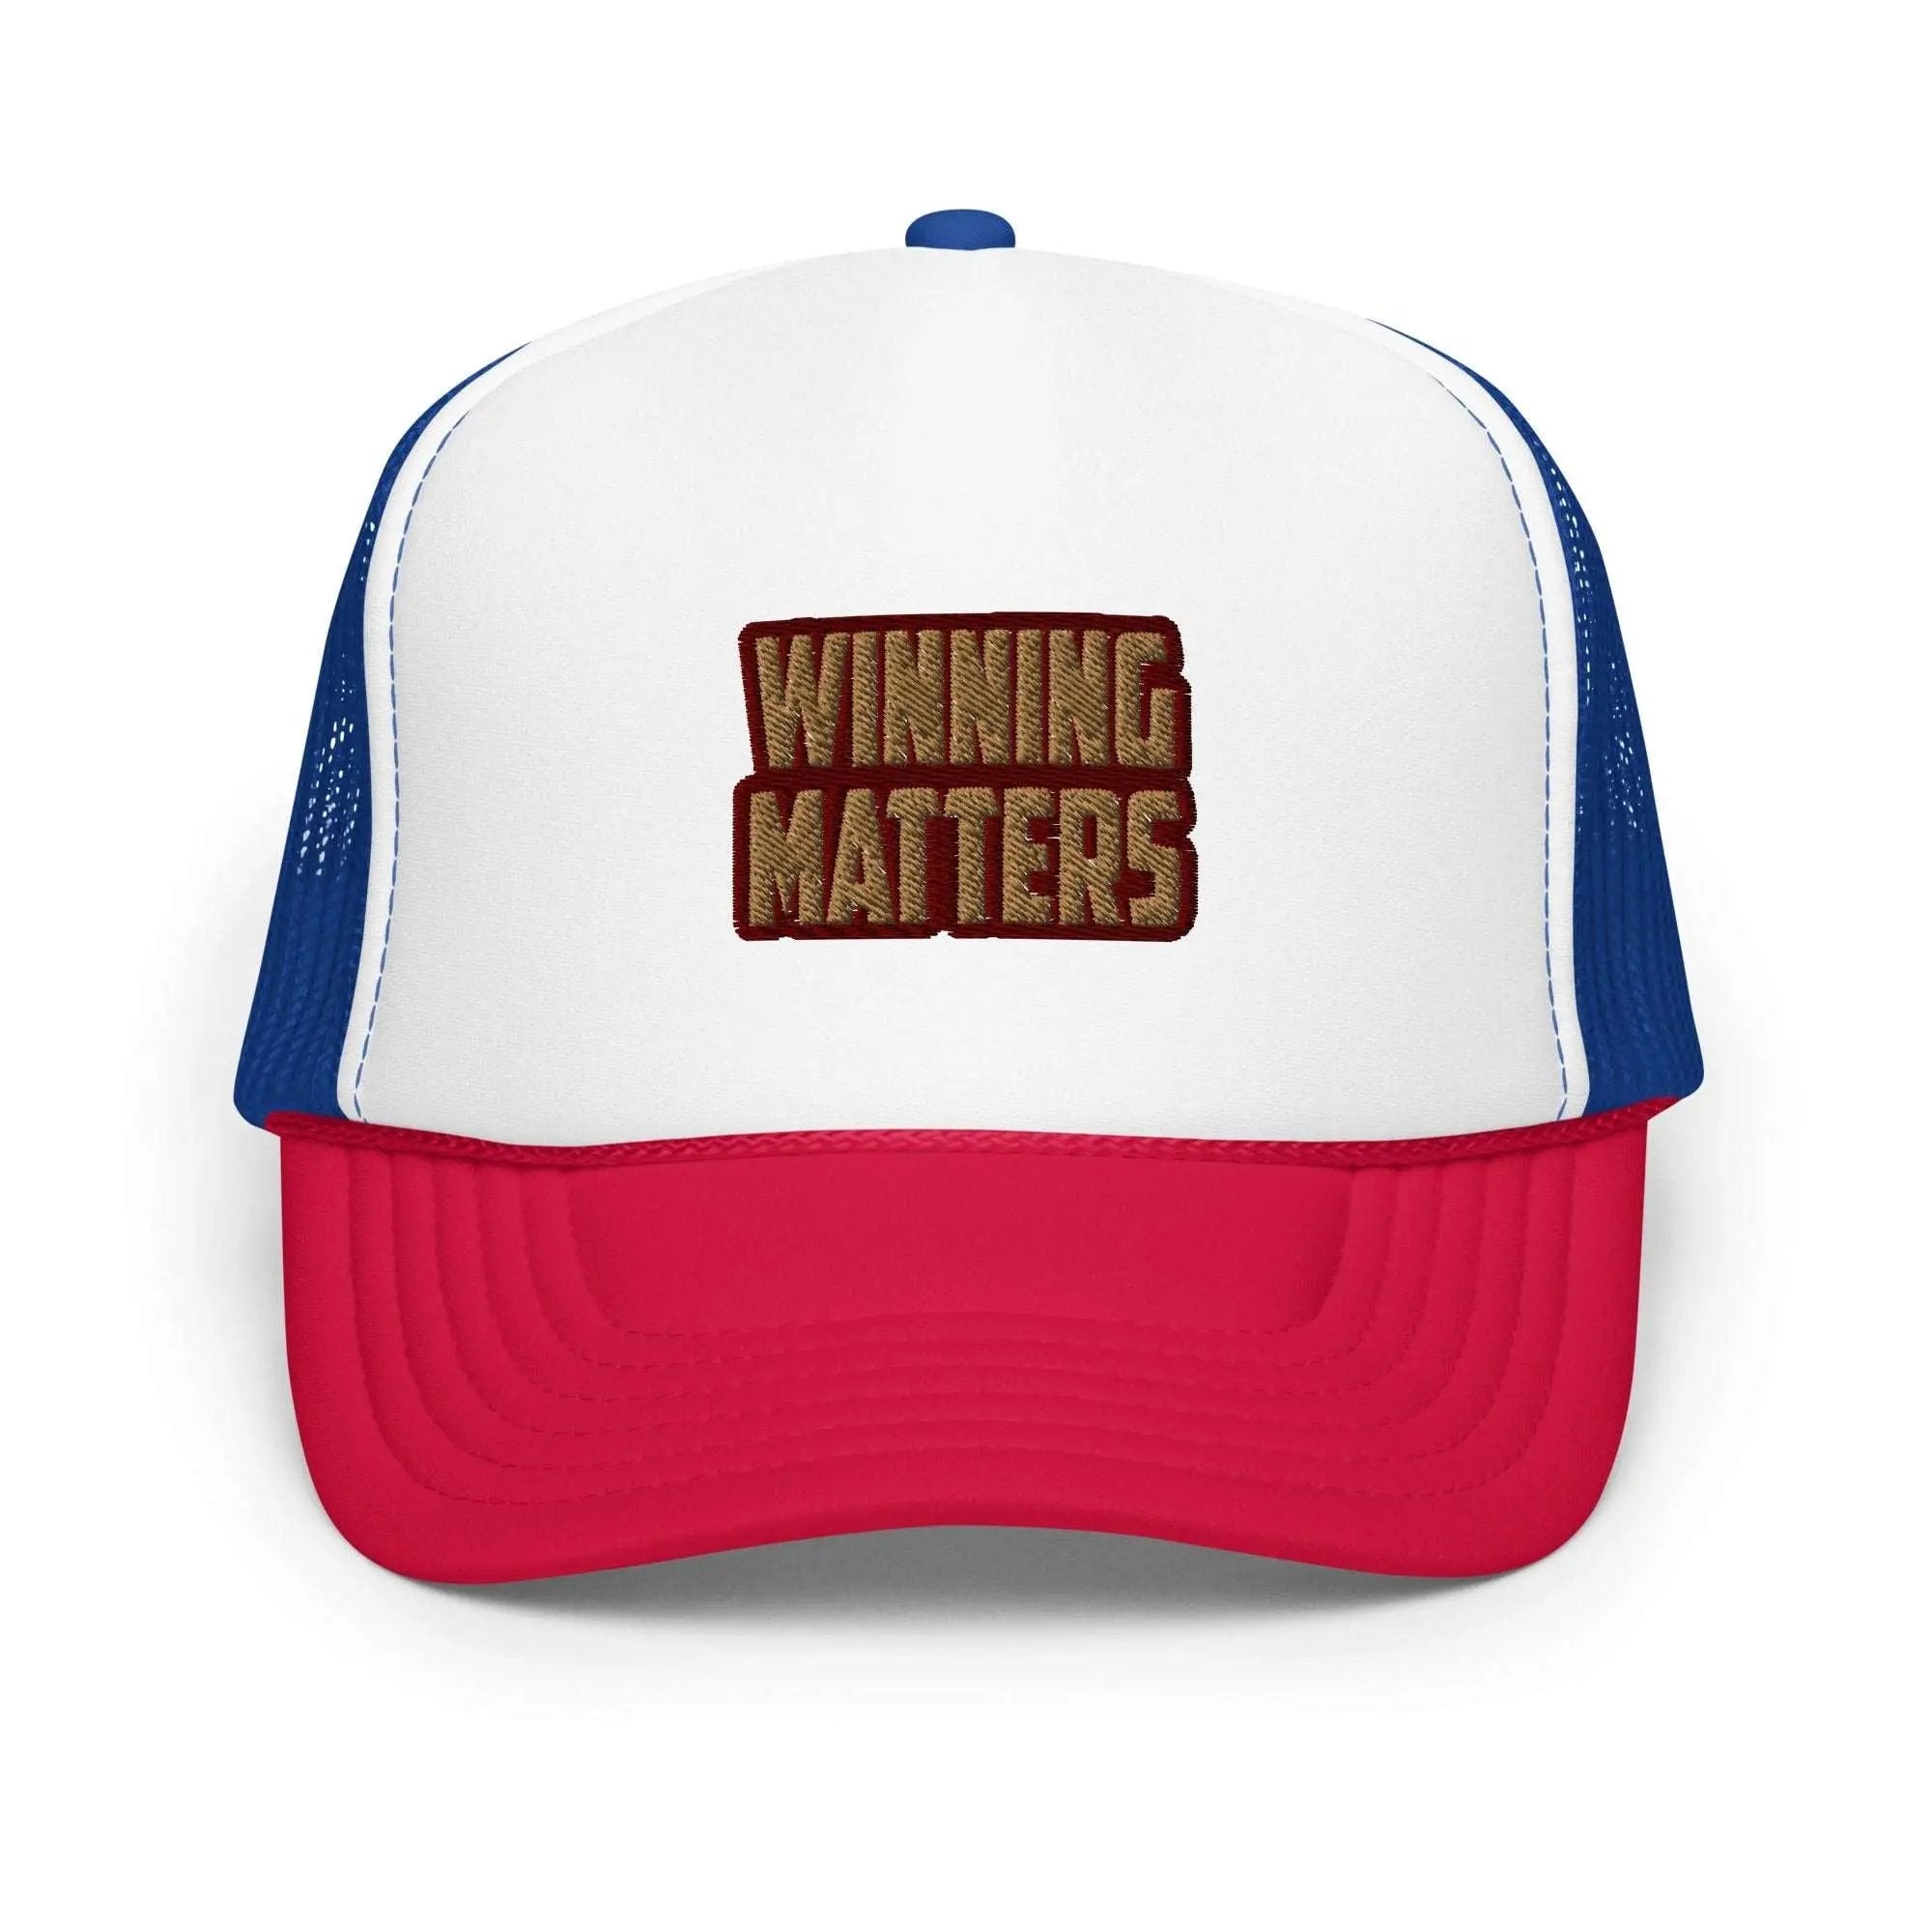 Winning Matters Foam trucker hat